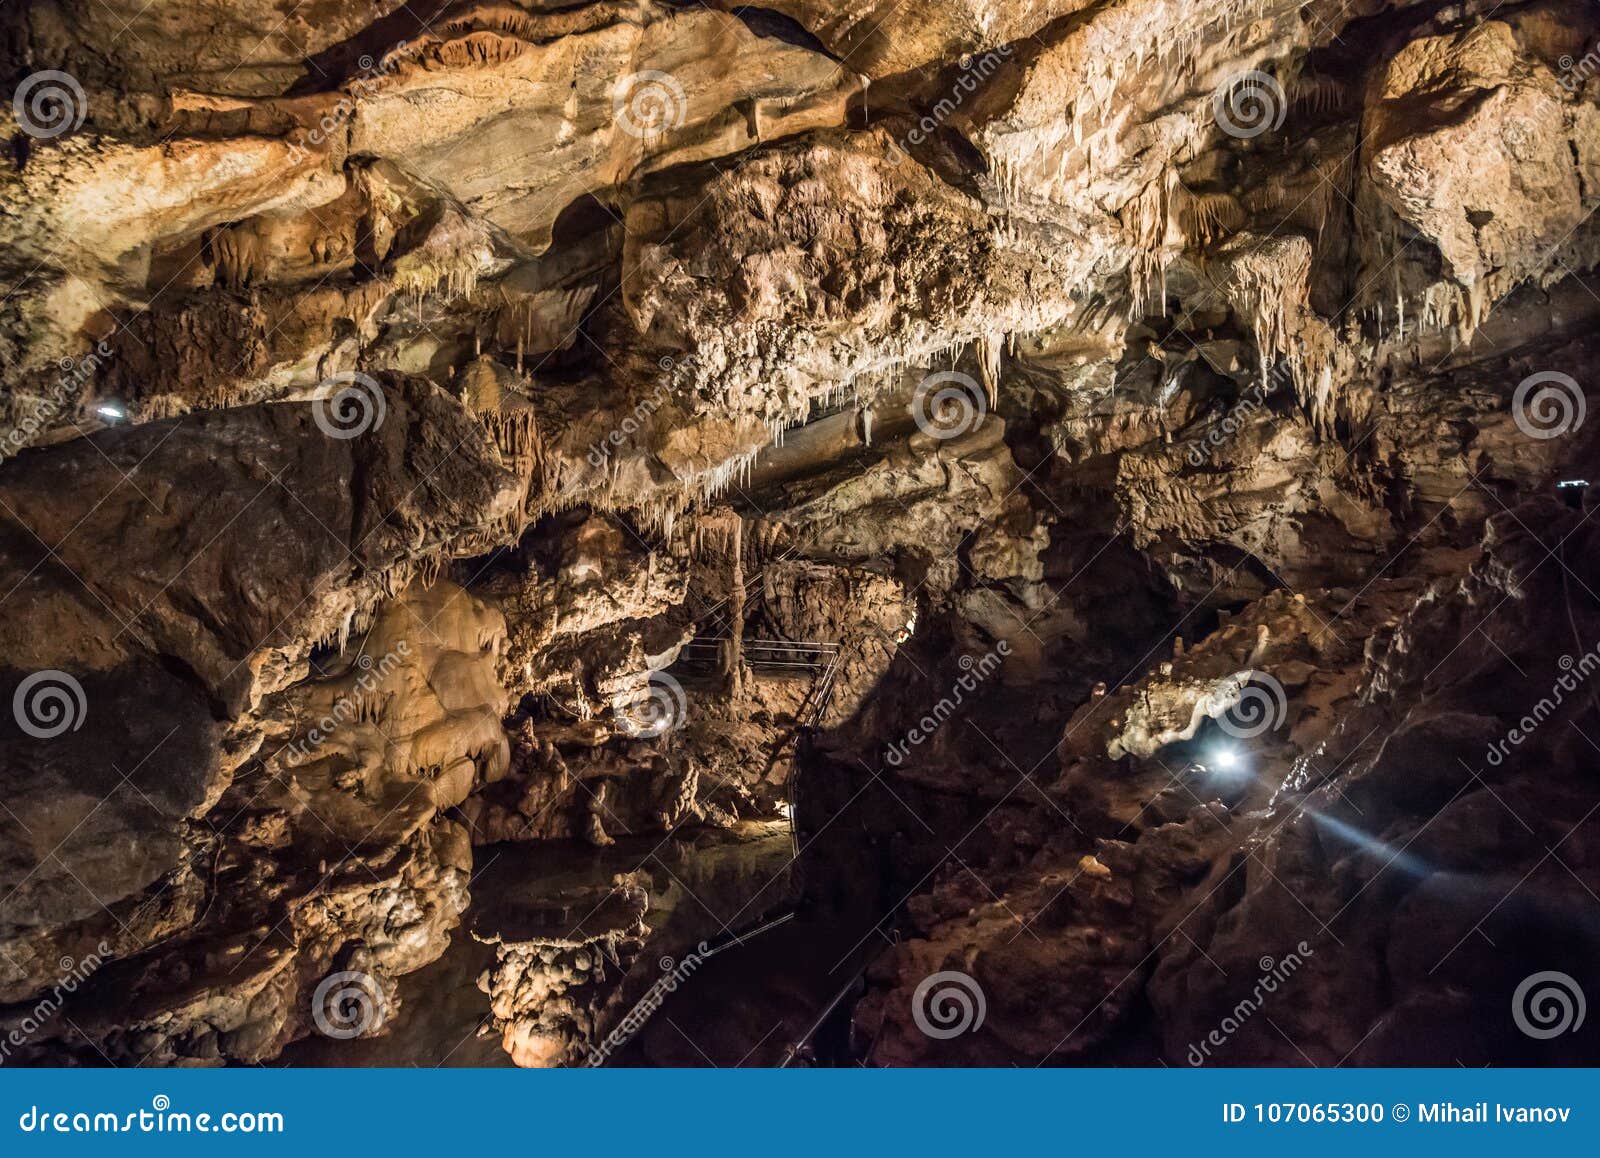 toirano caves, italy